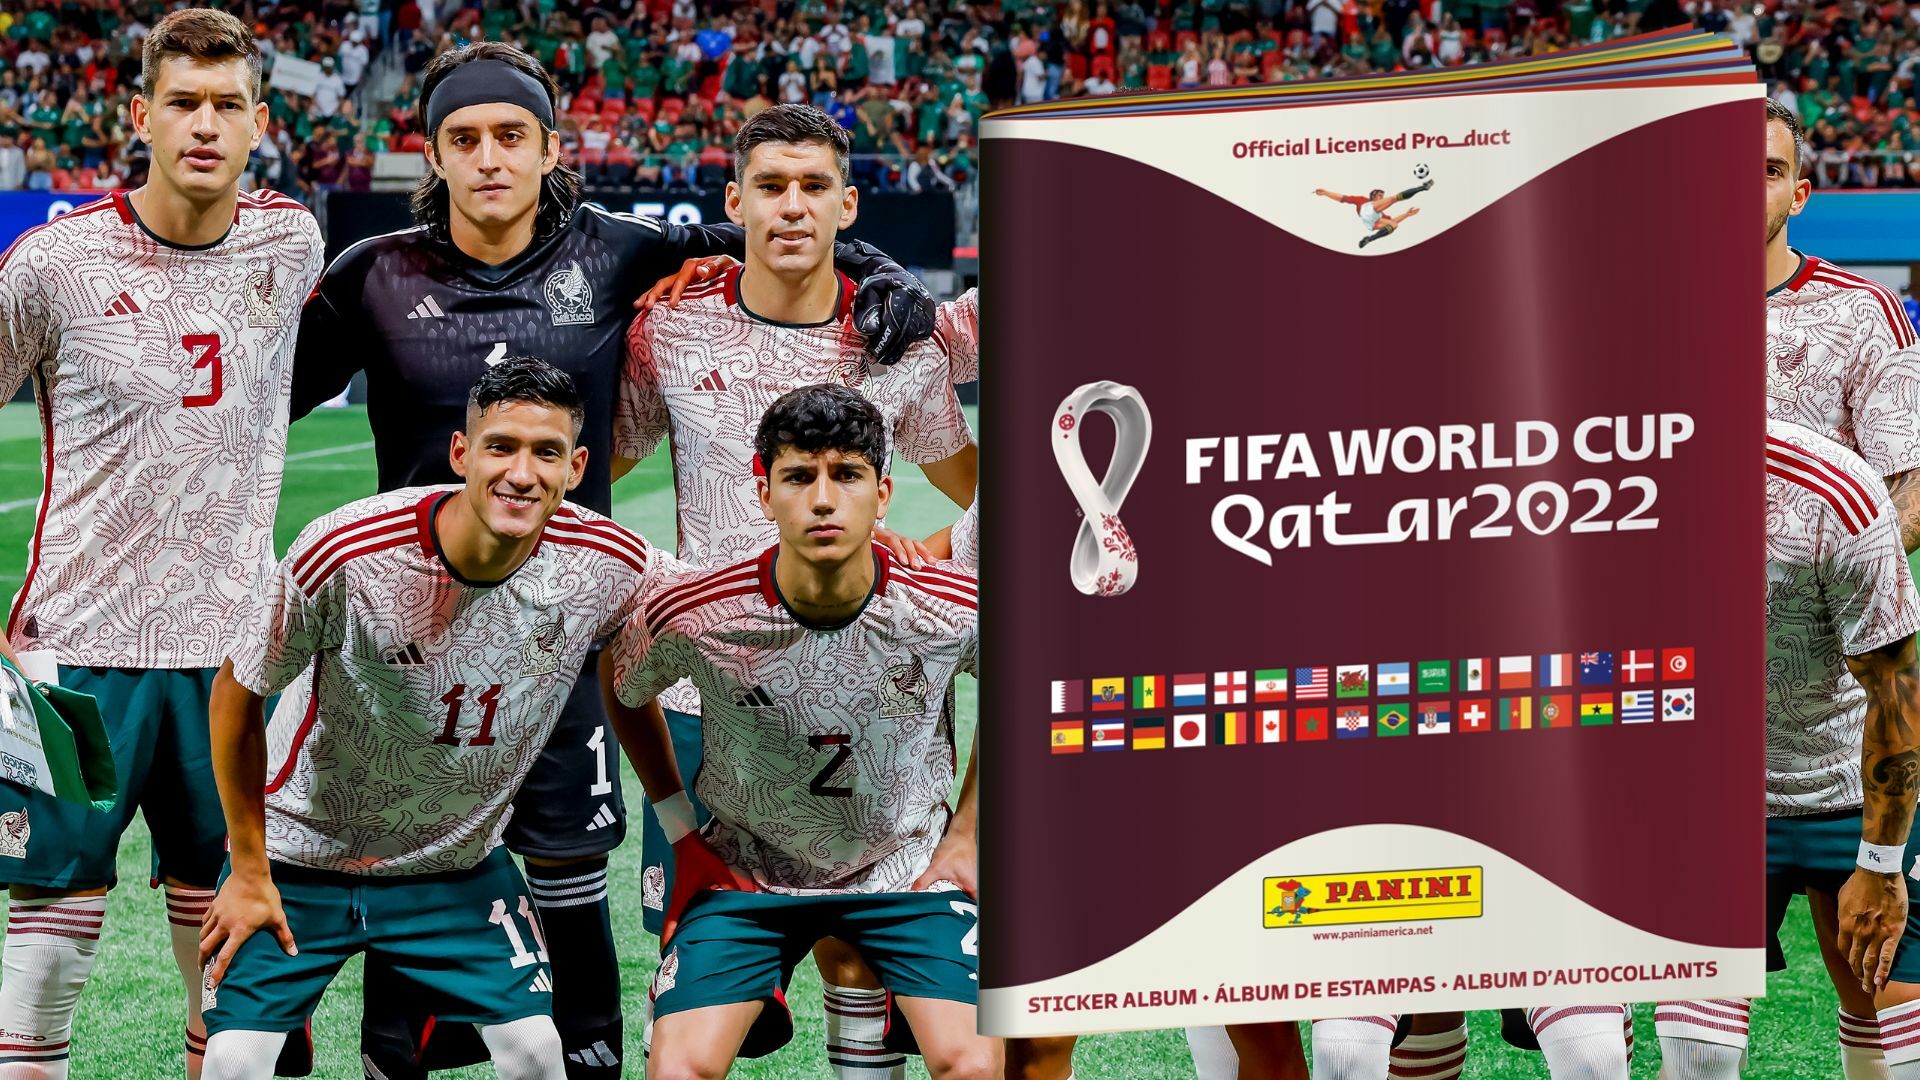 ¿Ahorraron? Llenar el álbum del Mundial de Qatar 2022 costaría miles de pesos